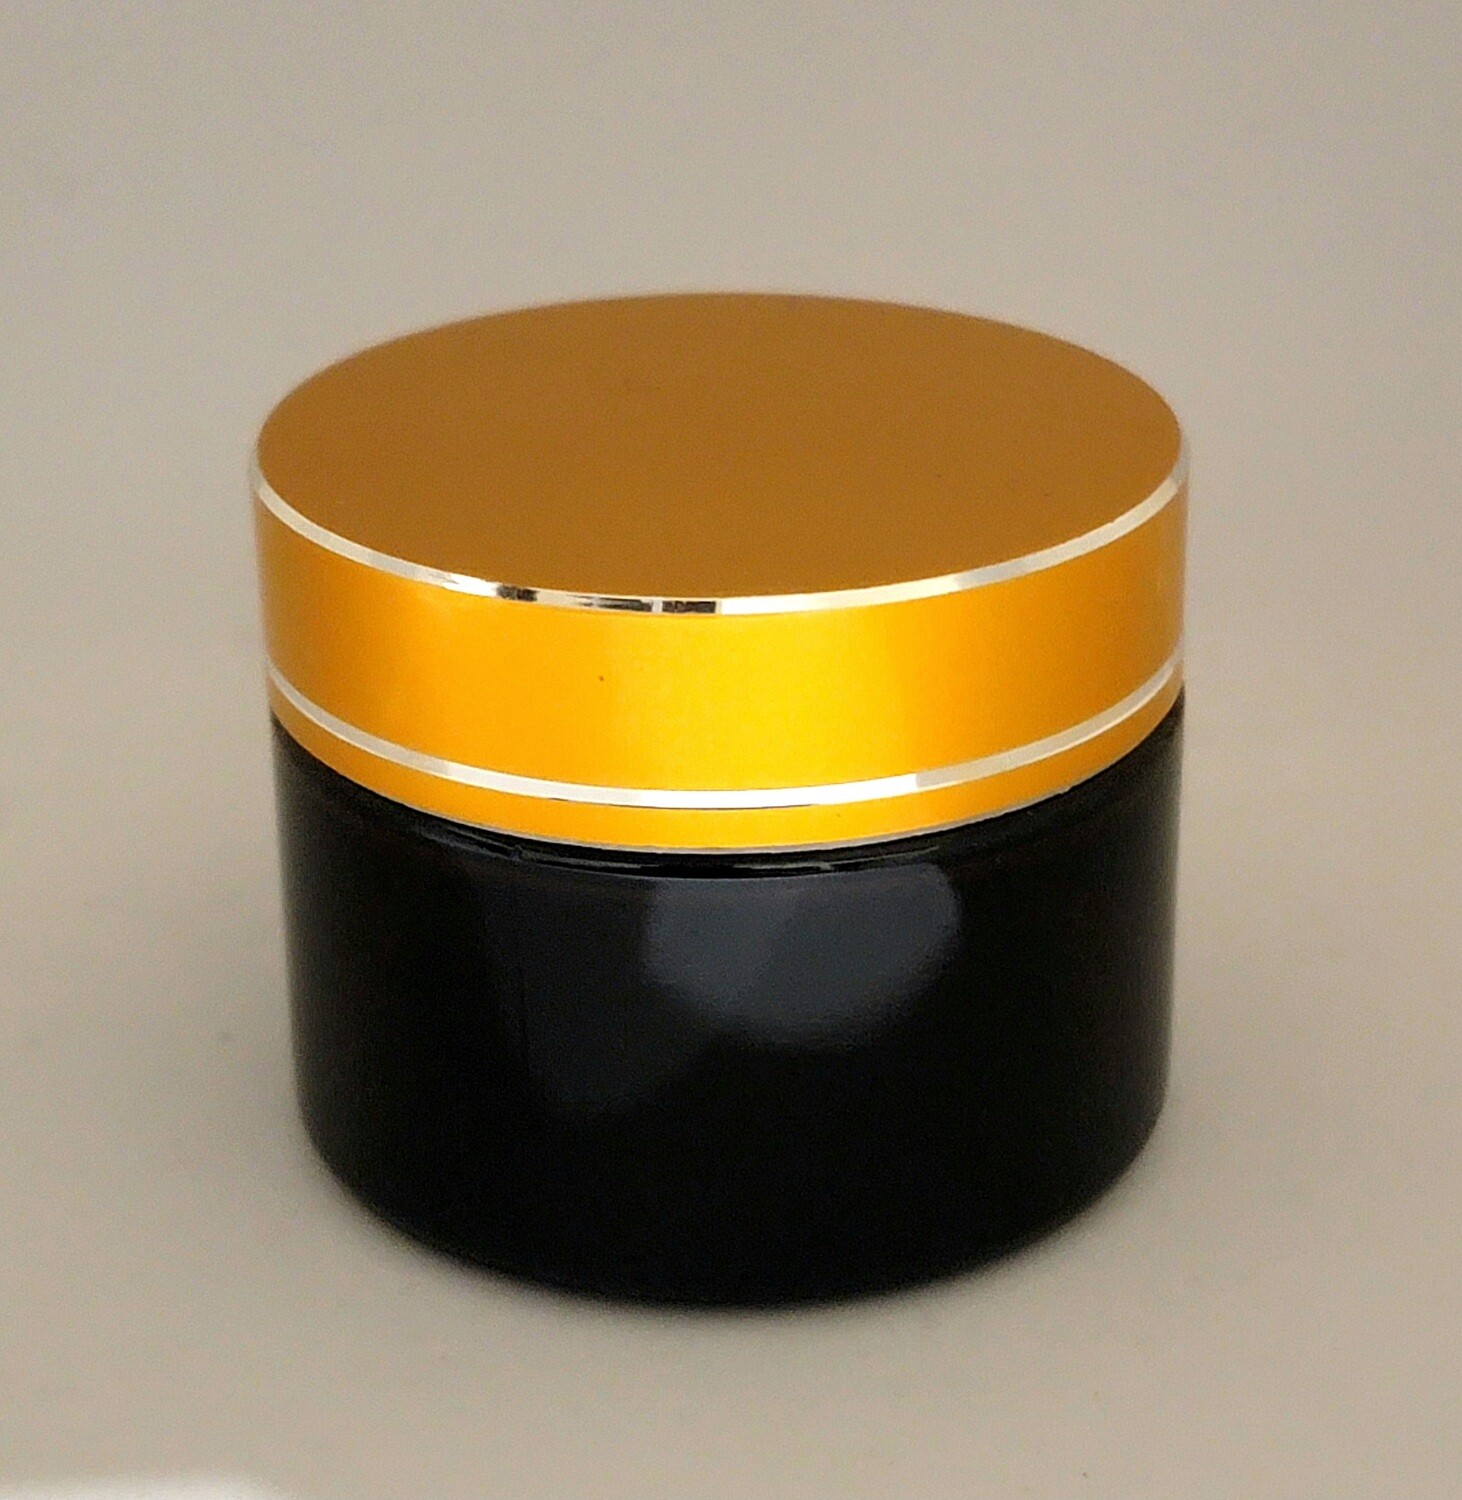 50g AMBER Glass QUALITY Balm Pot with Caska Seal & MATT GOLD Screw Cap